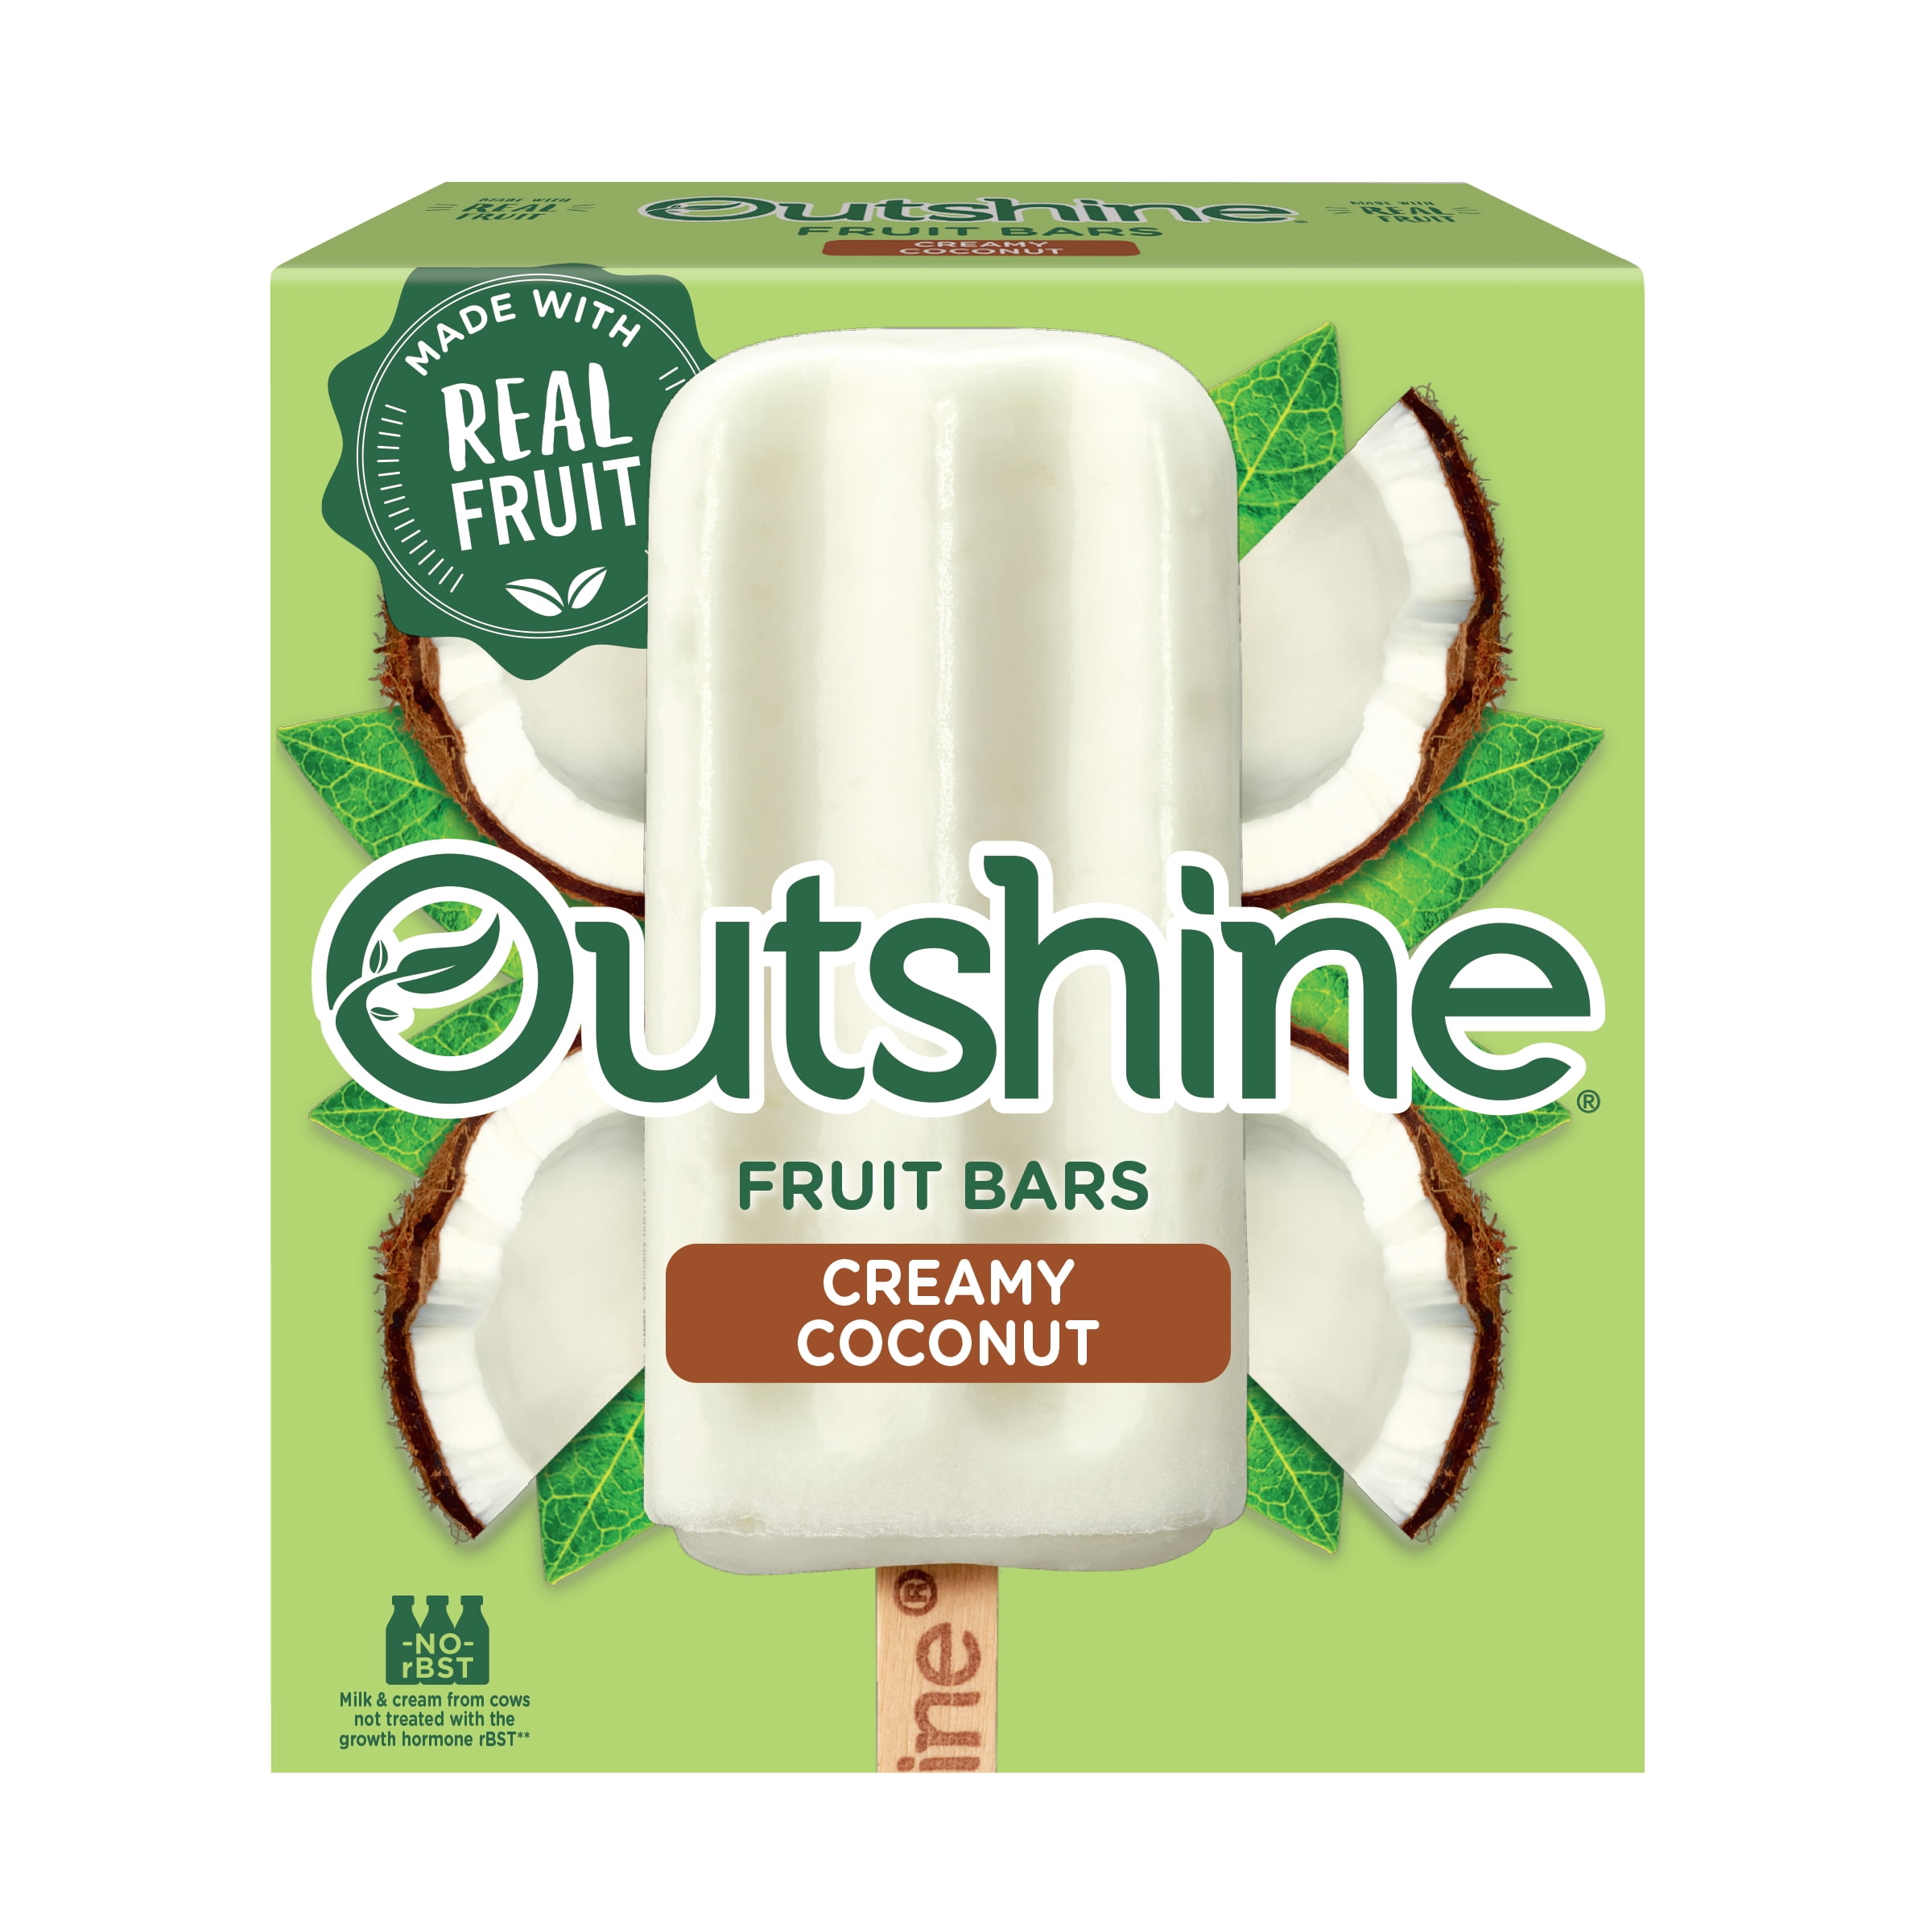 Outshine Creamy Coconut Frozen Fruit Bars, 6 Ct